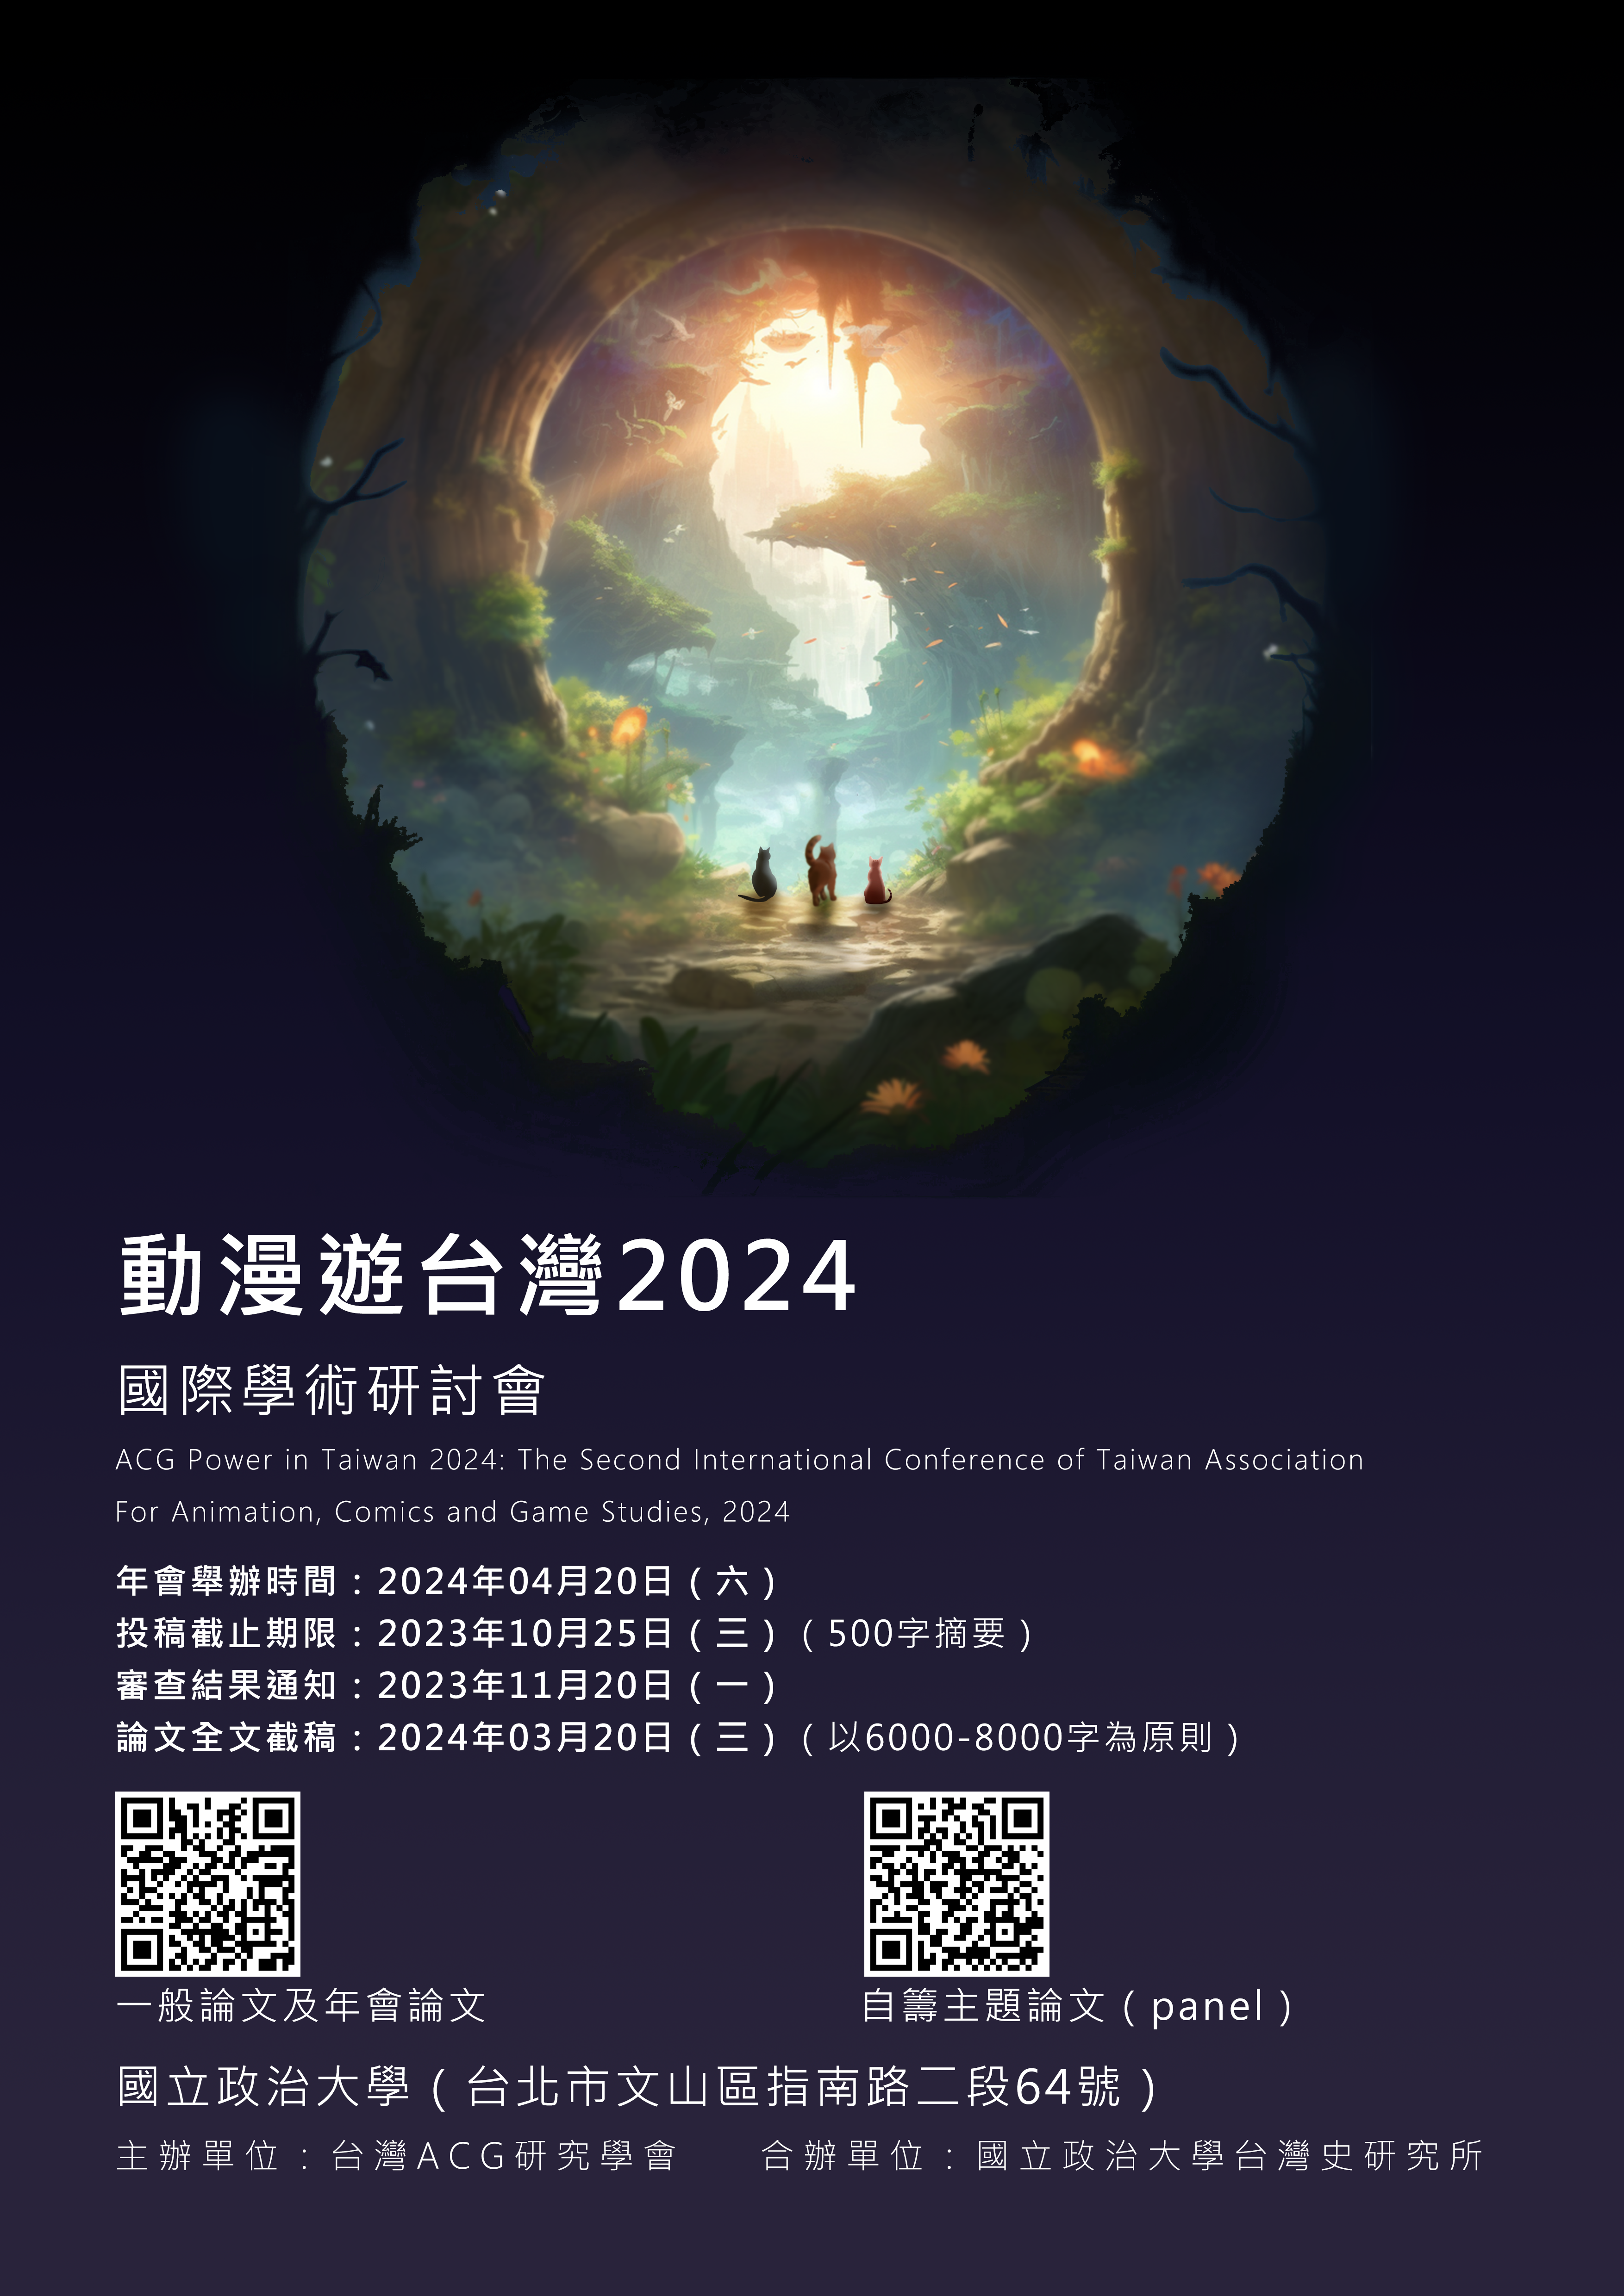 【轉發】「動漫遊台灣2024」國際學術研討會